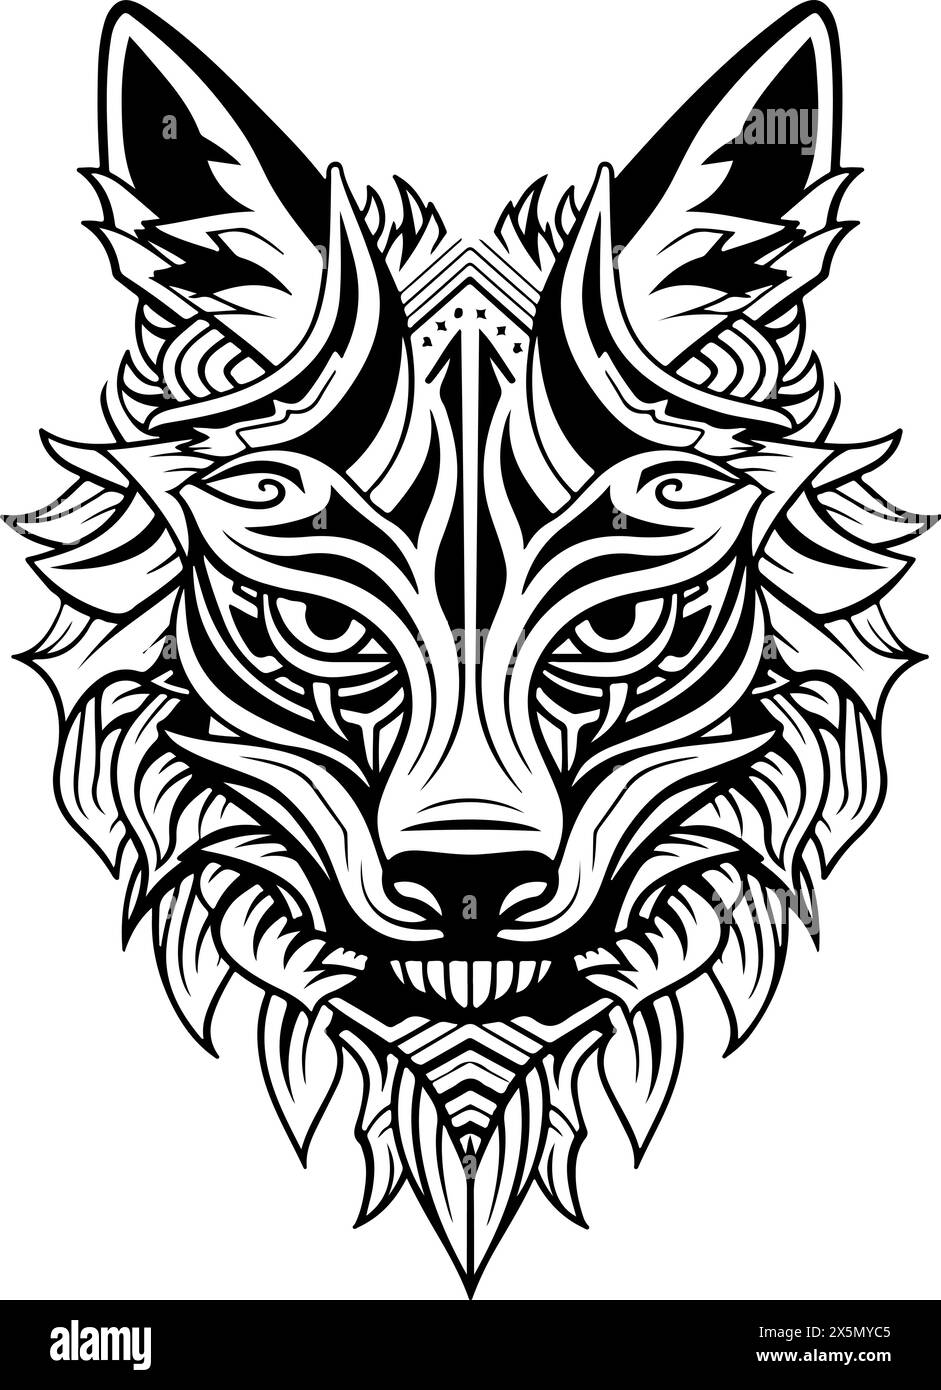 Dessin noir et blanc d'un loup avec une crinière. Le loup a un regard féroce sur son visage. Modèle de logo de tête de loup ornemental. Illustration de Vecteur